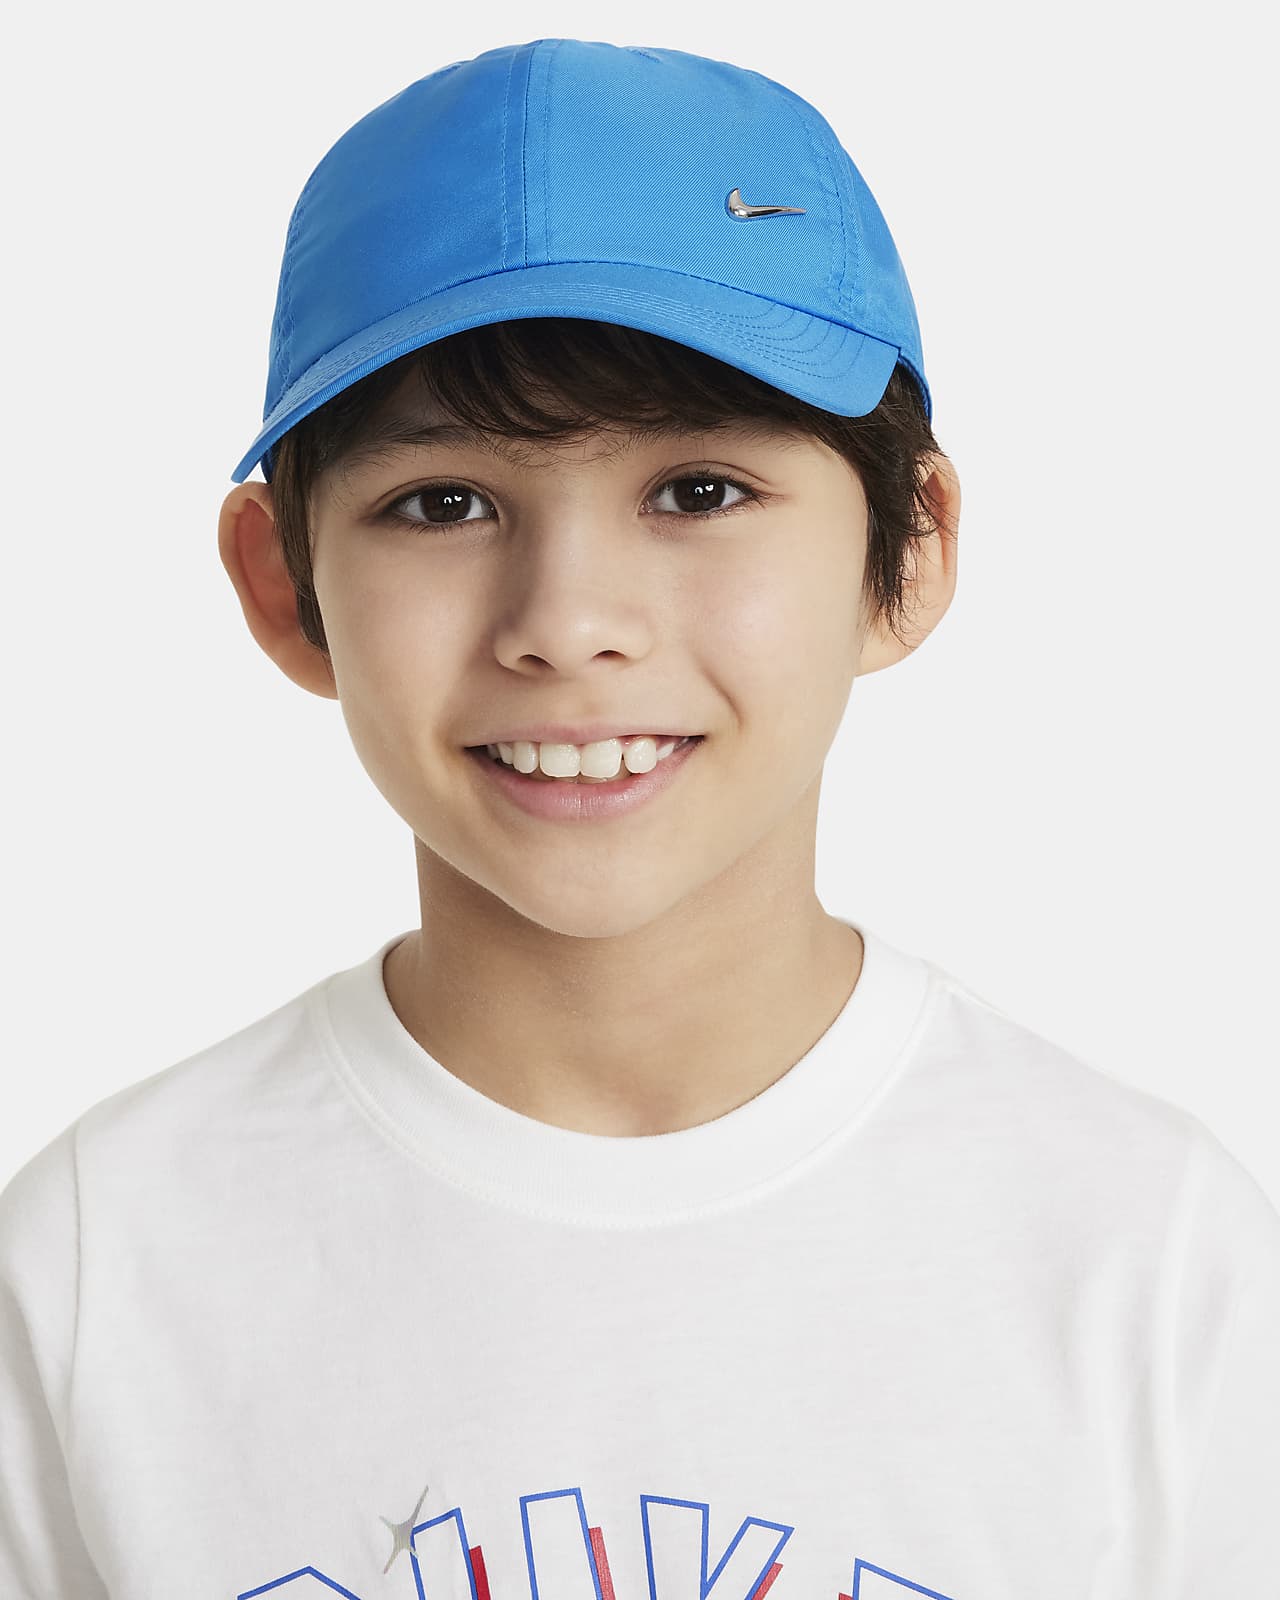 Παιδικό εύκαμπτο καπέλο jockey με μεταλλικό σήμα Swoosh Nike Dri-FIT Club